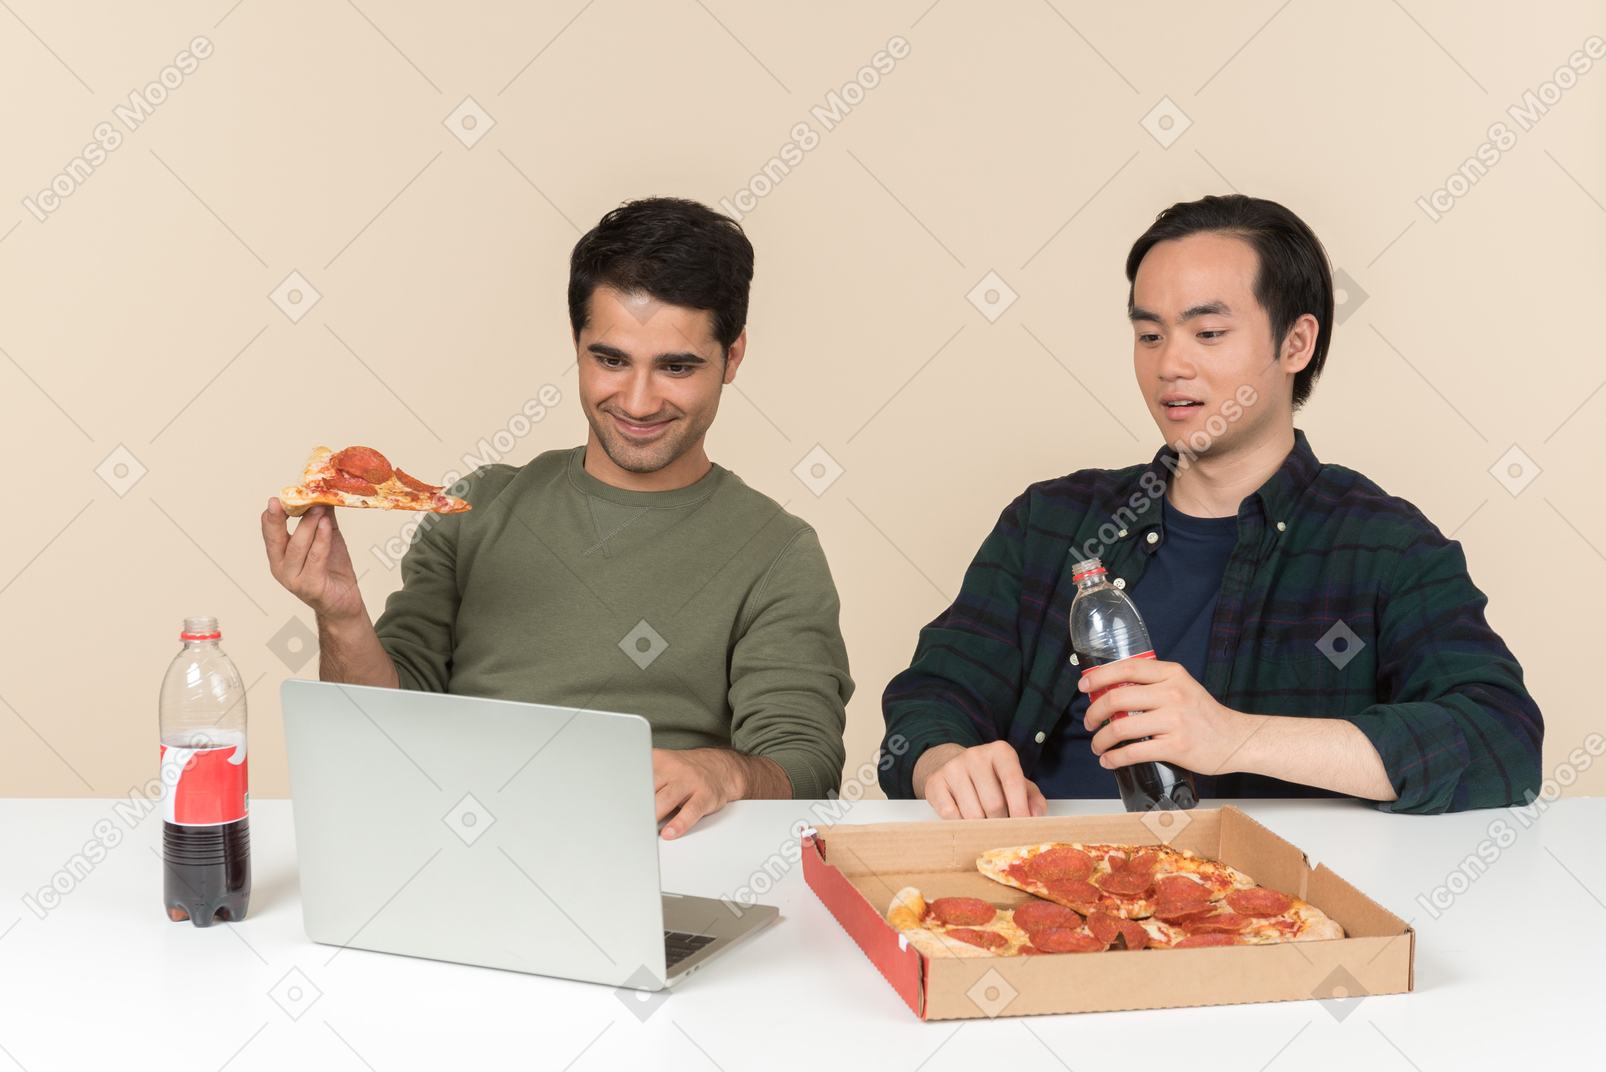 Межрасовые друзья едят нездоровую пищу и смотрят фильм на ноутбуке